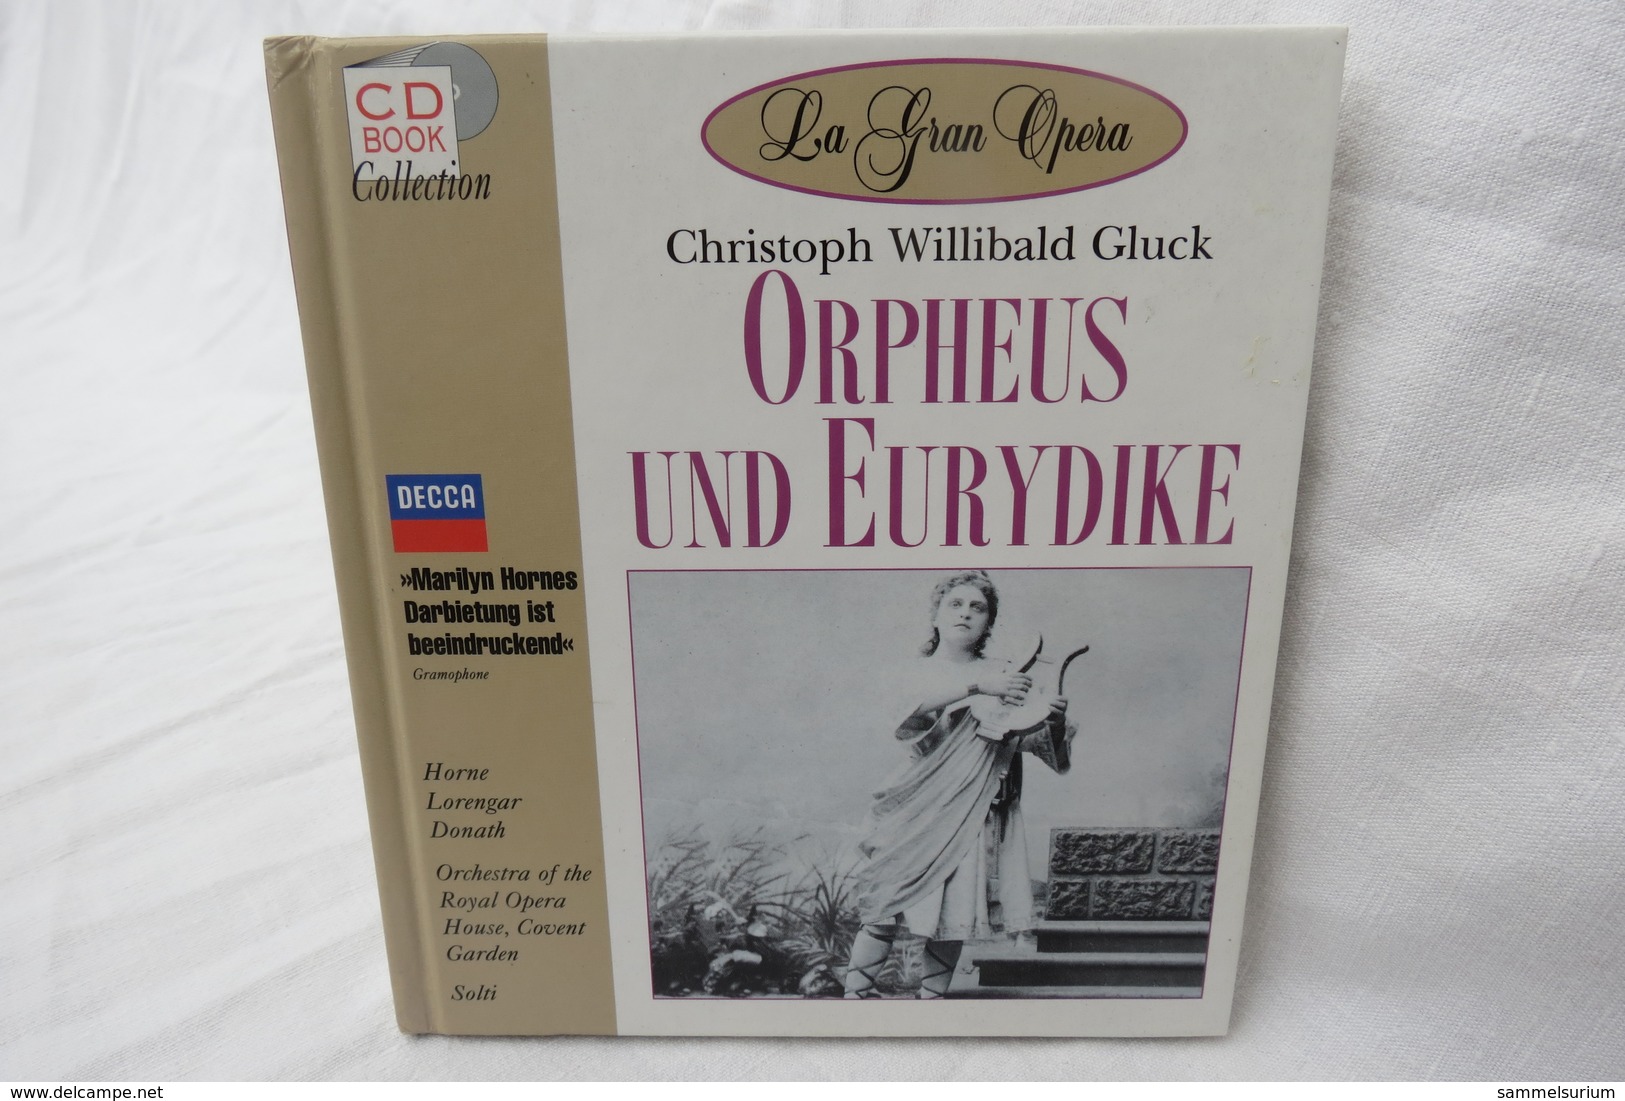 CD "Orpheus Und Eurydike / Christoph Willibald Gluck" Mit Buch Aus Der CD Book Collection (gepflegter Zustand) - Opera / Operette